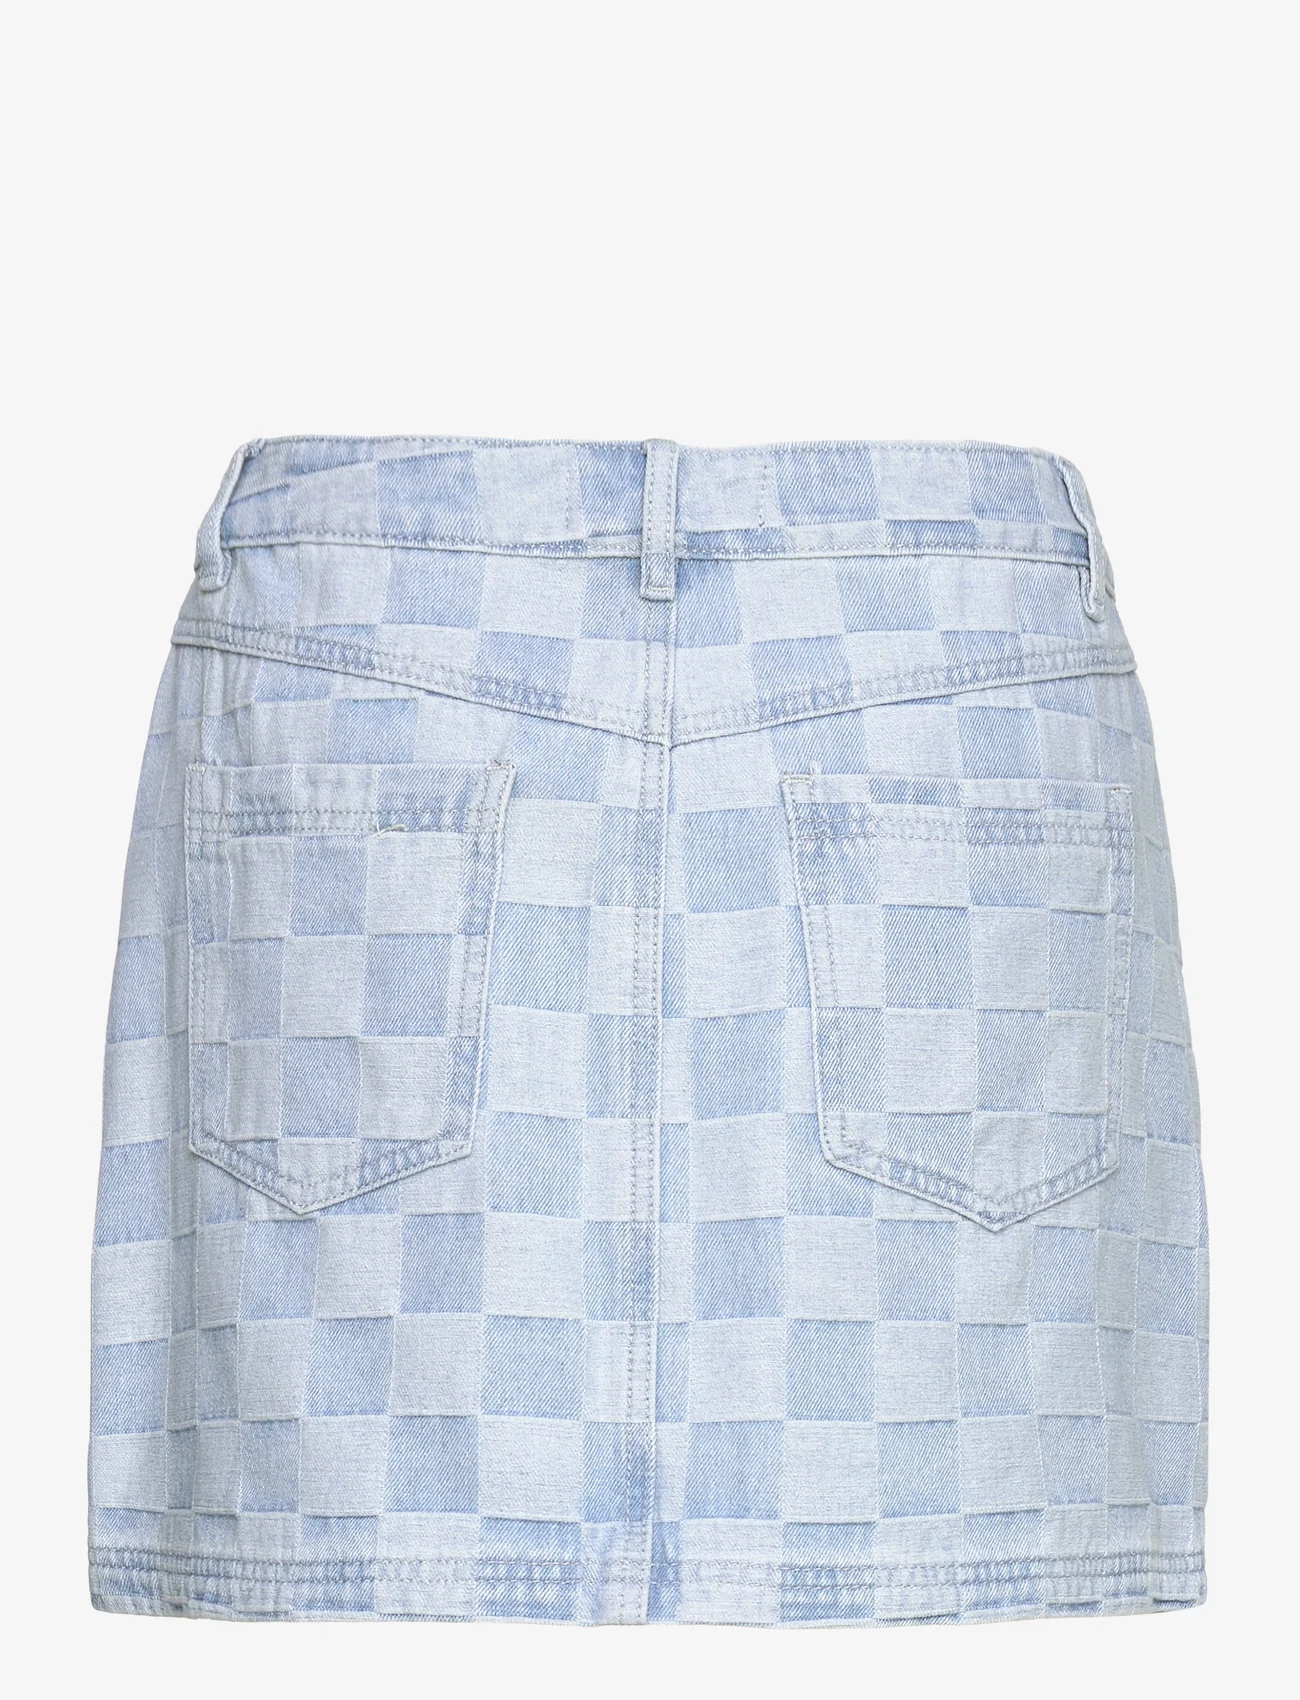 Sofie Schnoor - Skirt - korte rokken - light denim blue - 1